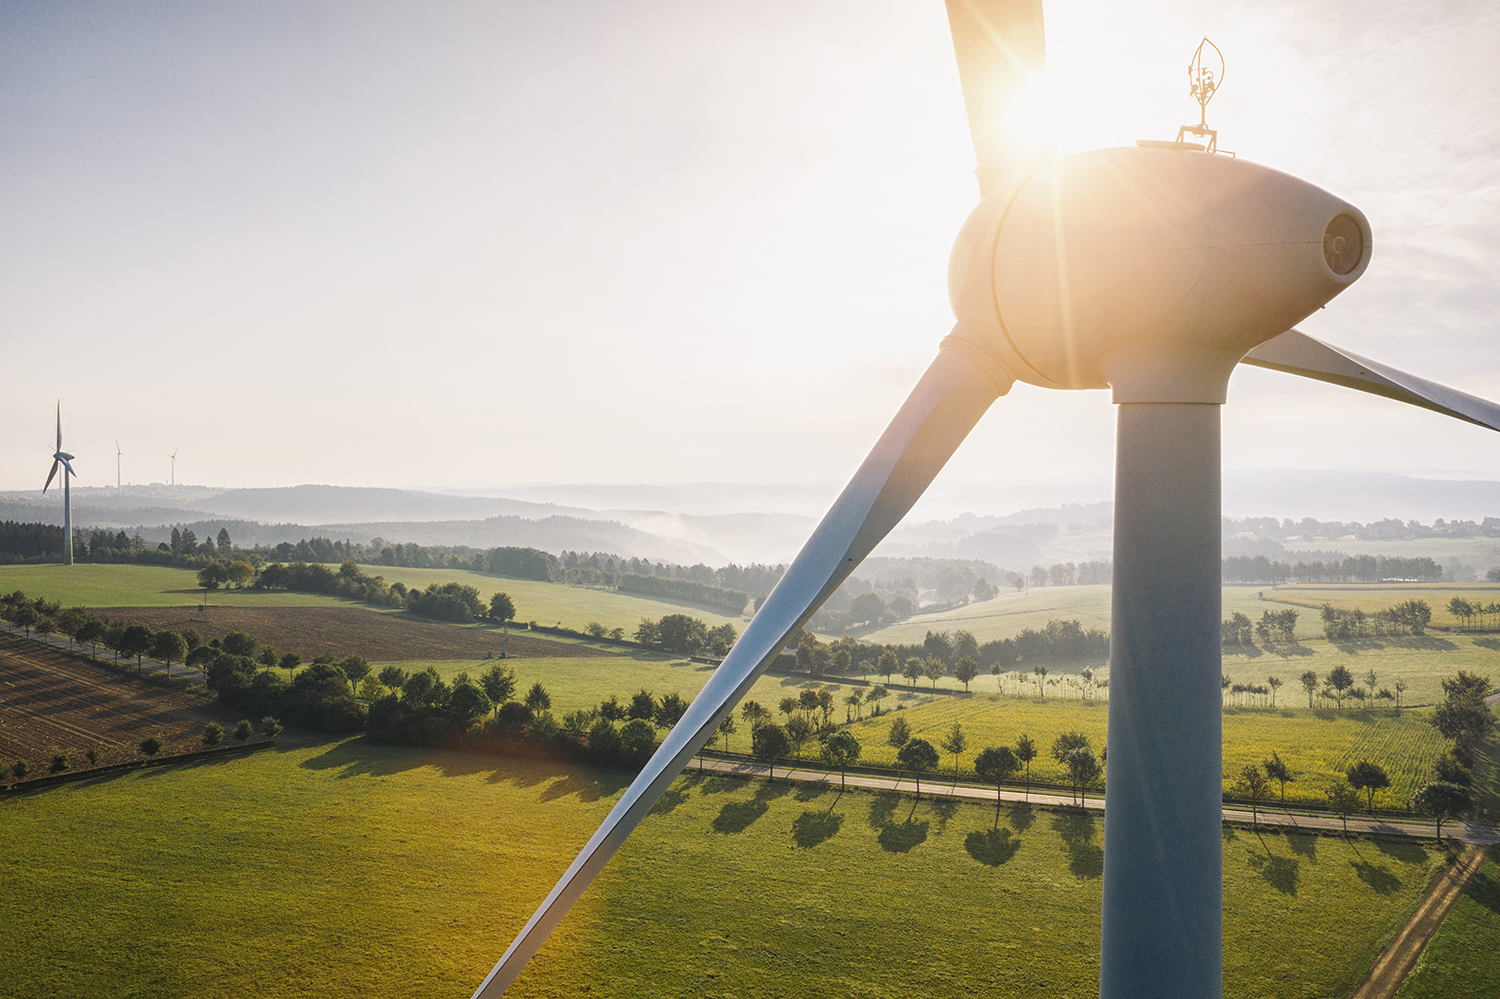 Altra Renewables ofrece al fabricante de aerogeneradores sistemas de transmisión mecánica de calidad con un solo proveedor.